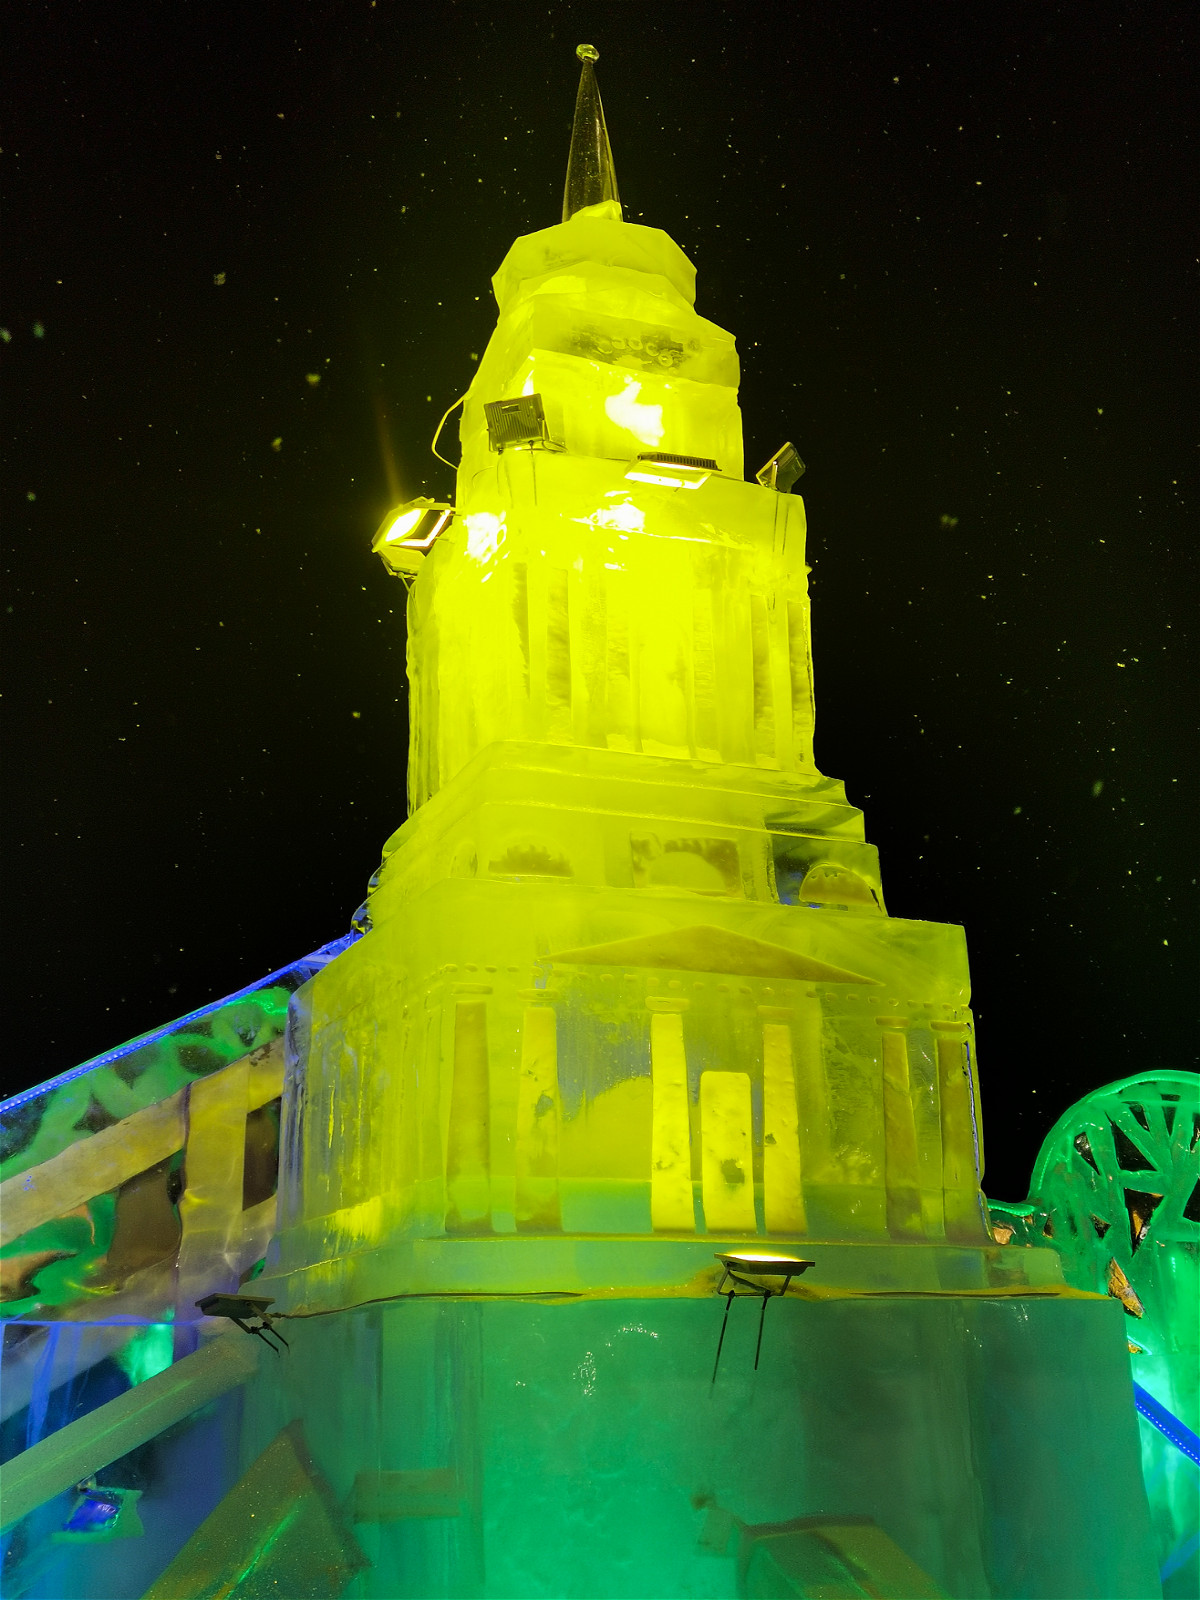 ледяная башня с подсветкой желтого цвета